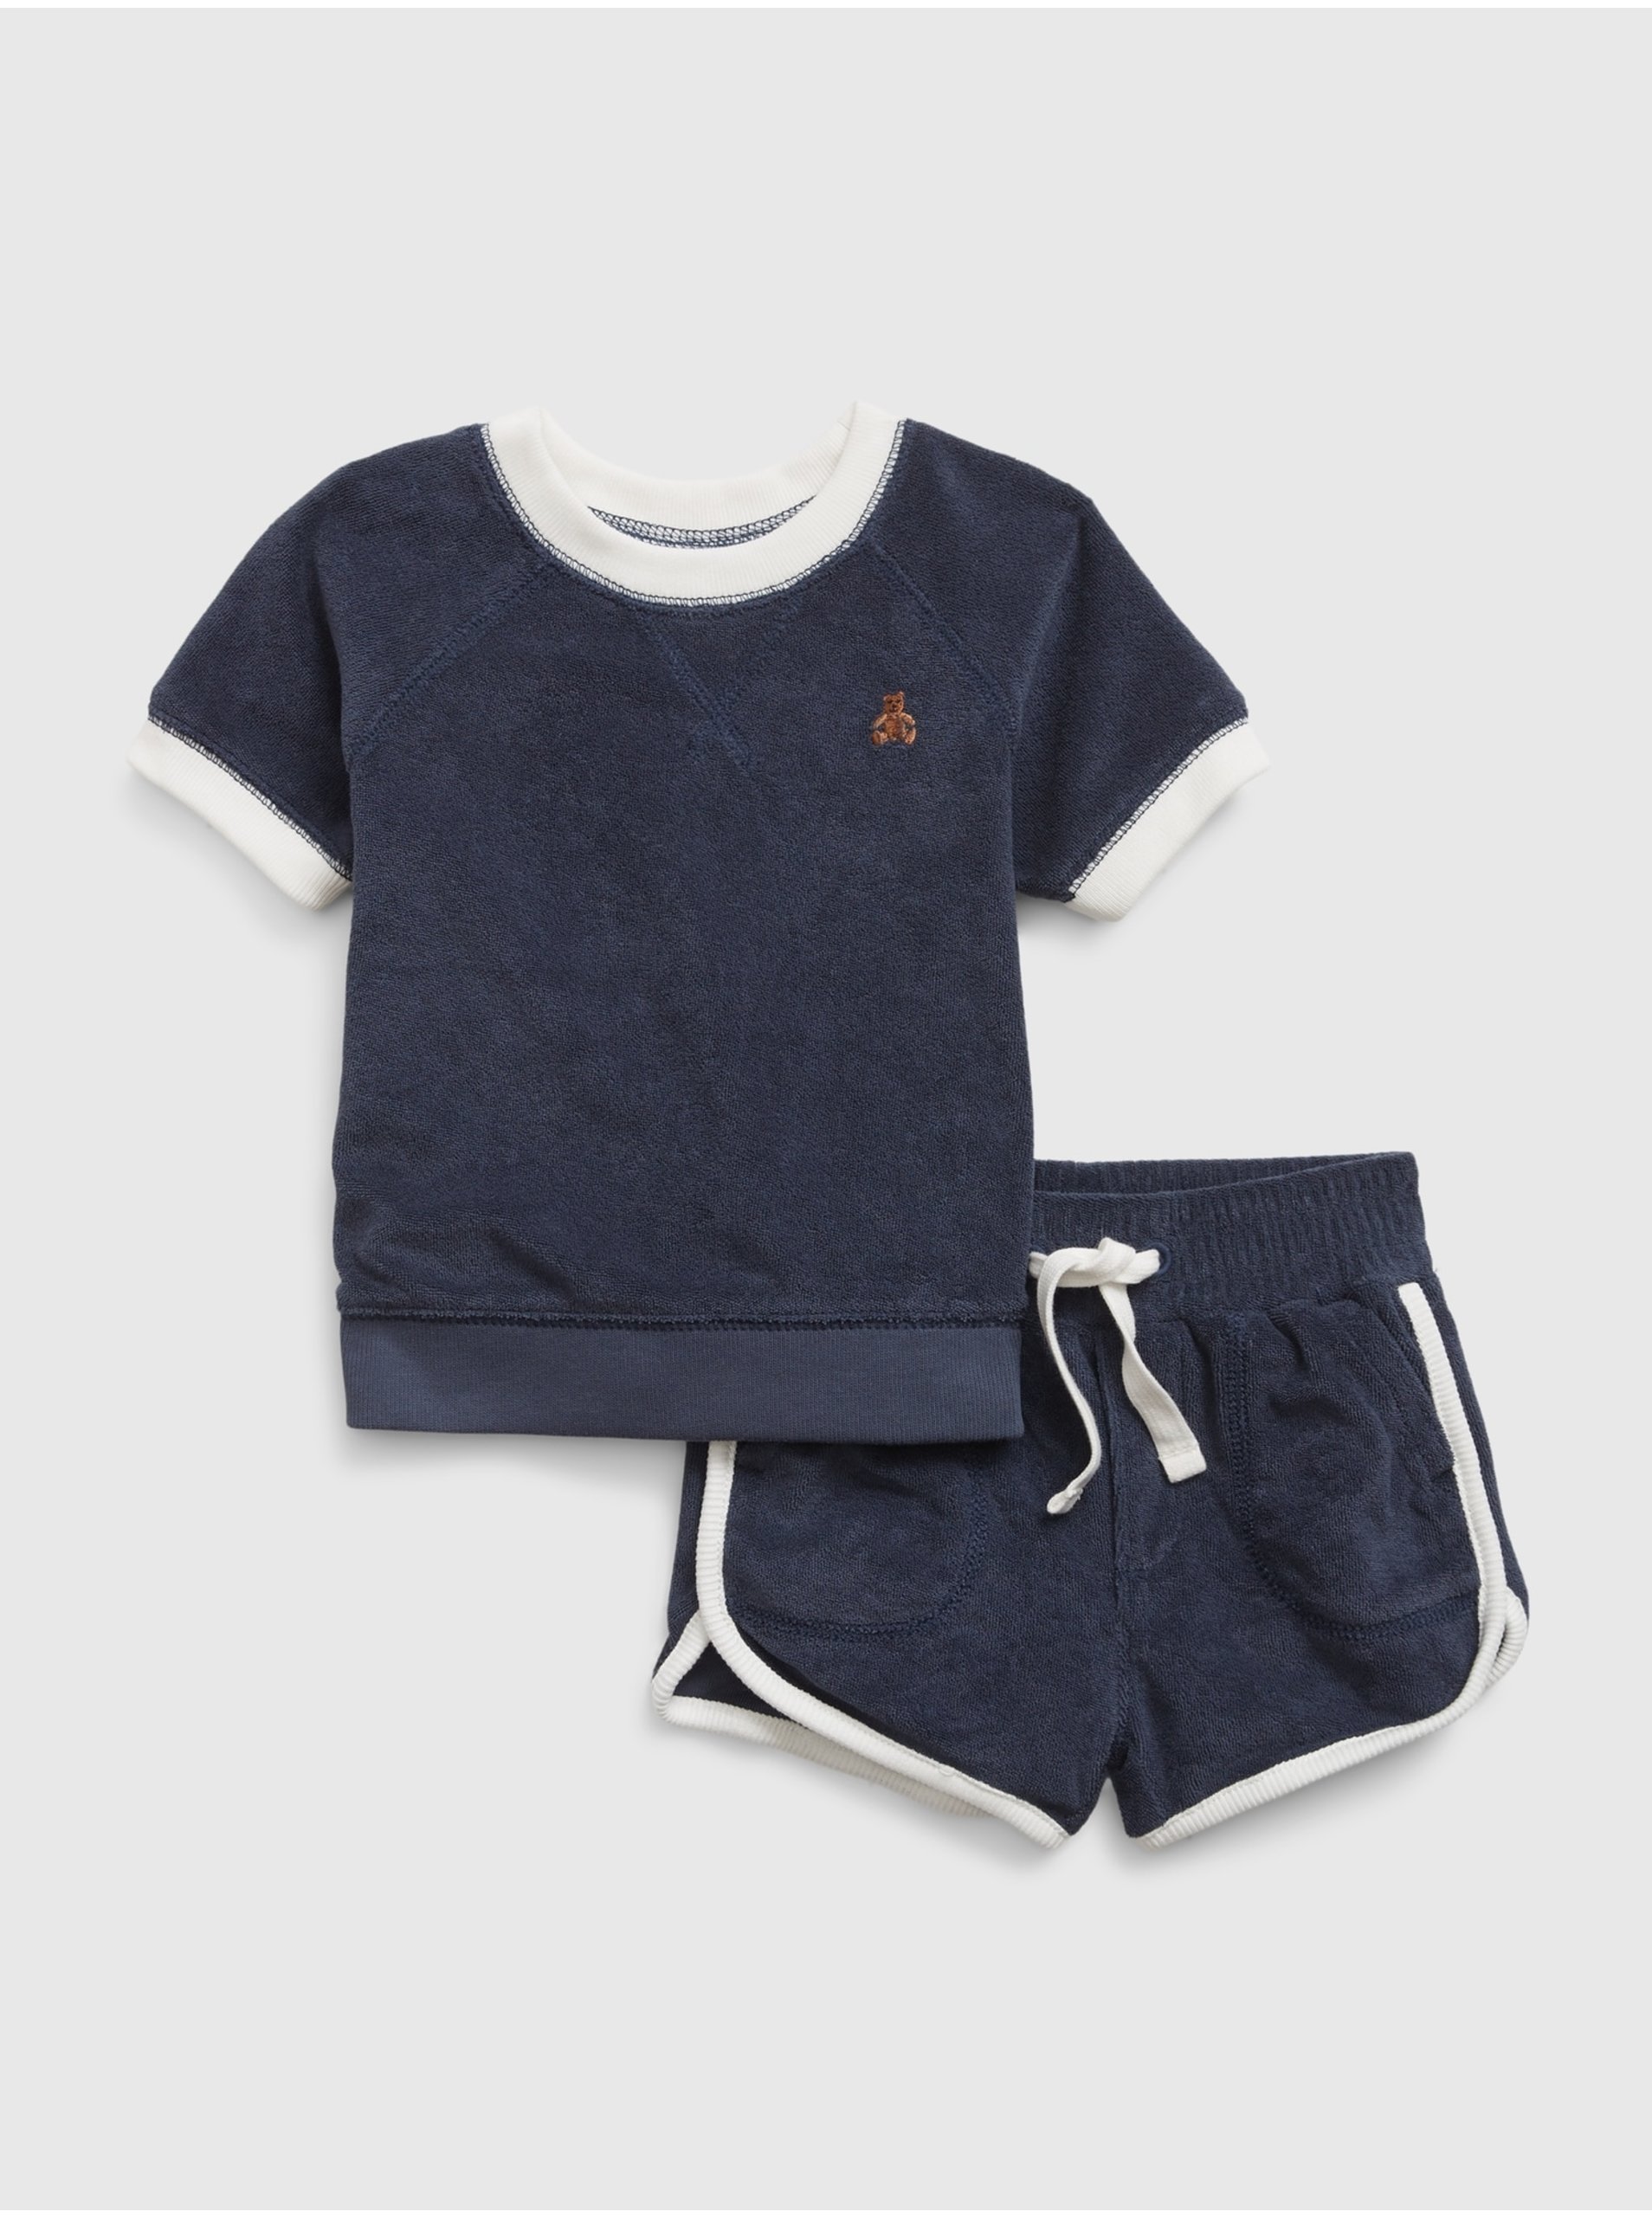 Lacno Tmavomodrý detský froté set tričko a šortky GAP